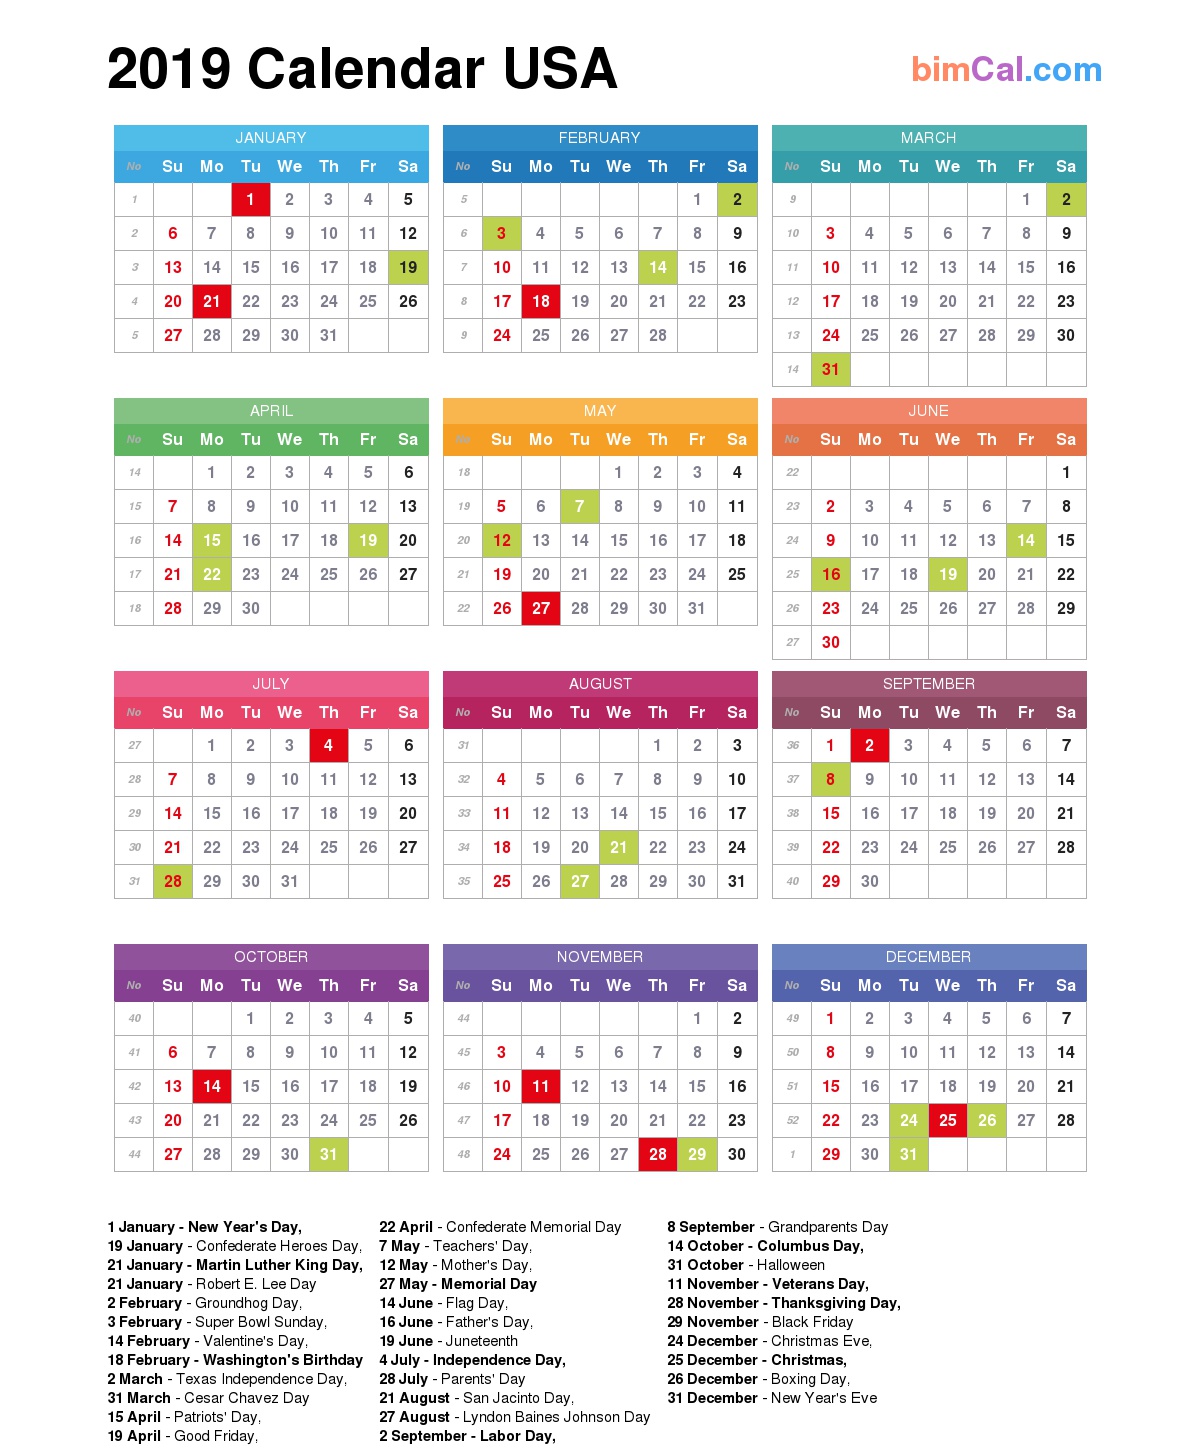 2019 Calendar USA - bimCal